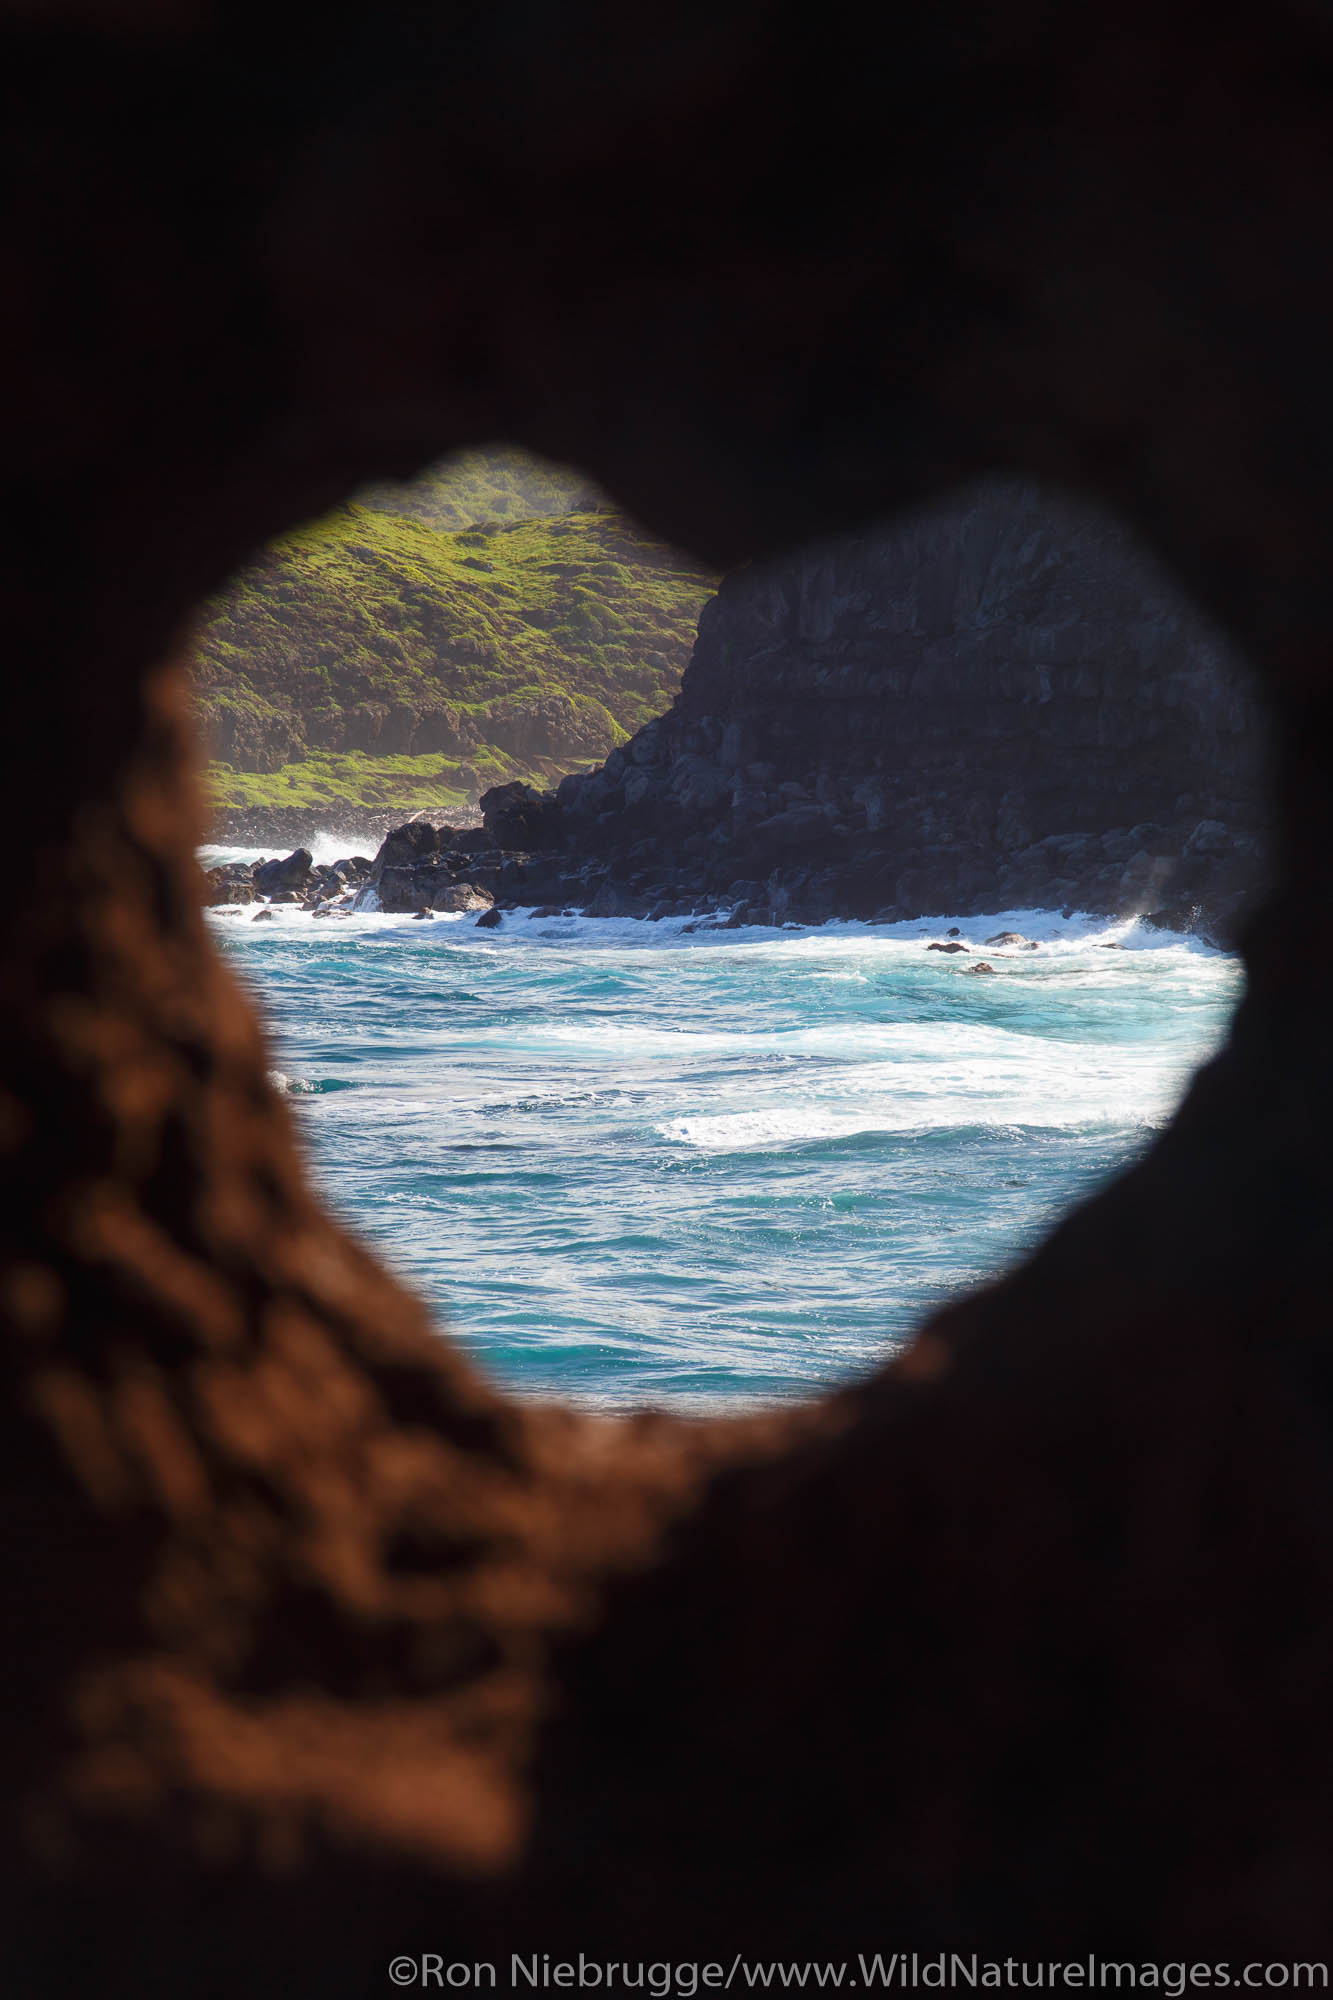 Heart shaped rock, Nakalele Point, Maui, Hawaii.